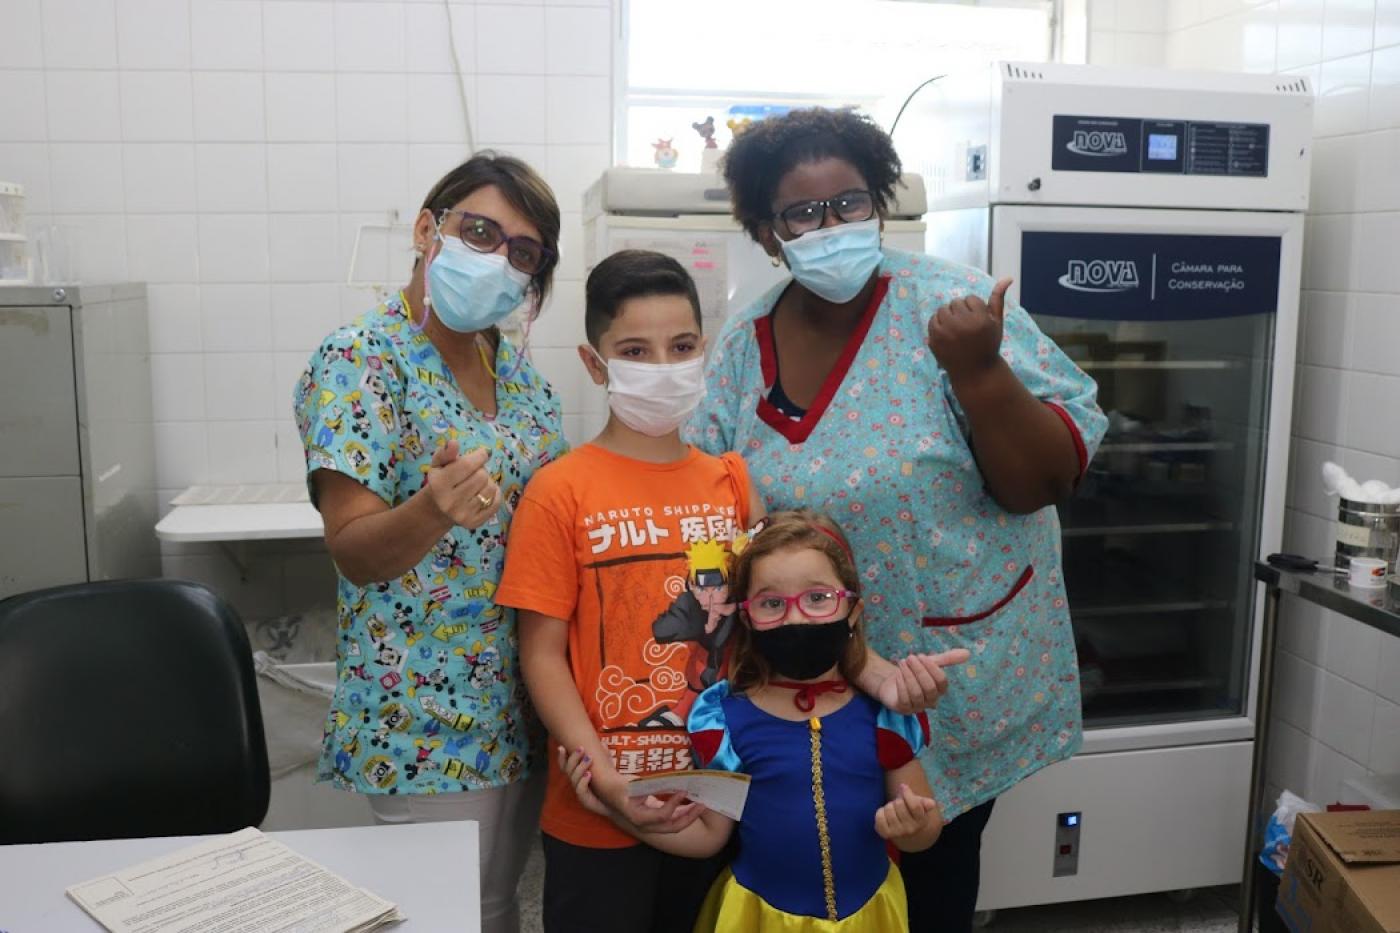 enfermeiras e duas crianças na sala de vacinação #paratodosverem